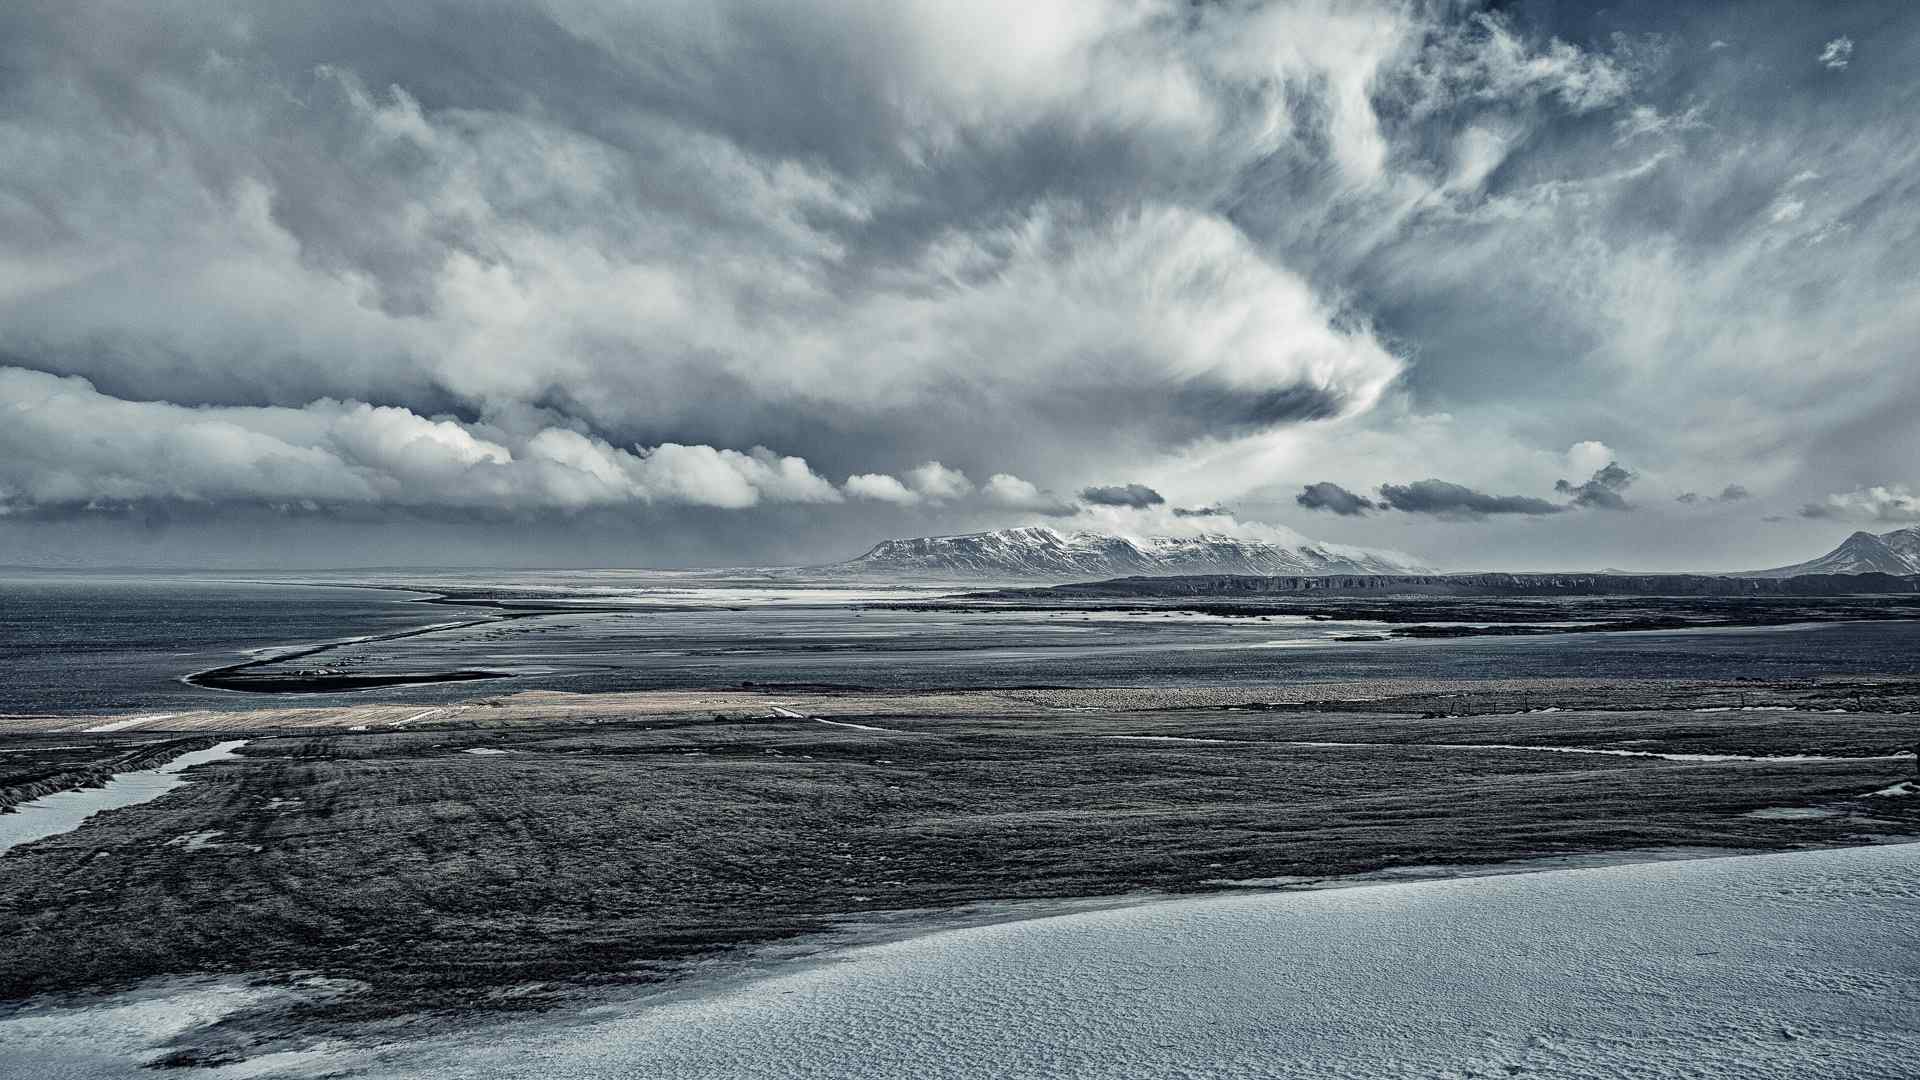  冰岛绮丽壮观的极地风光桌面壁纸